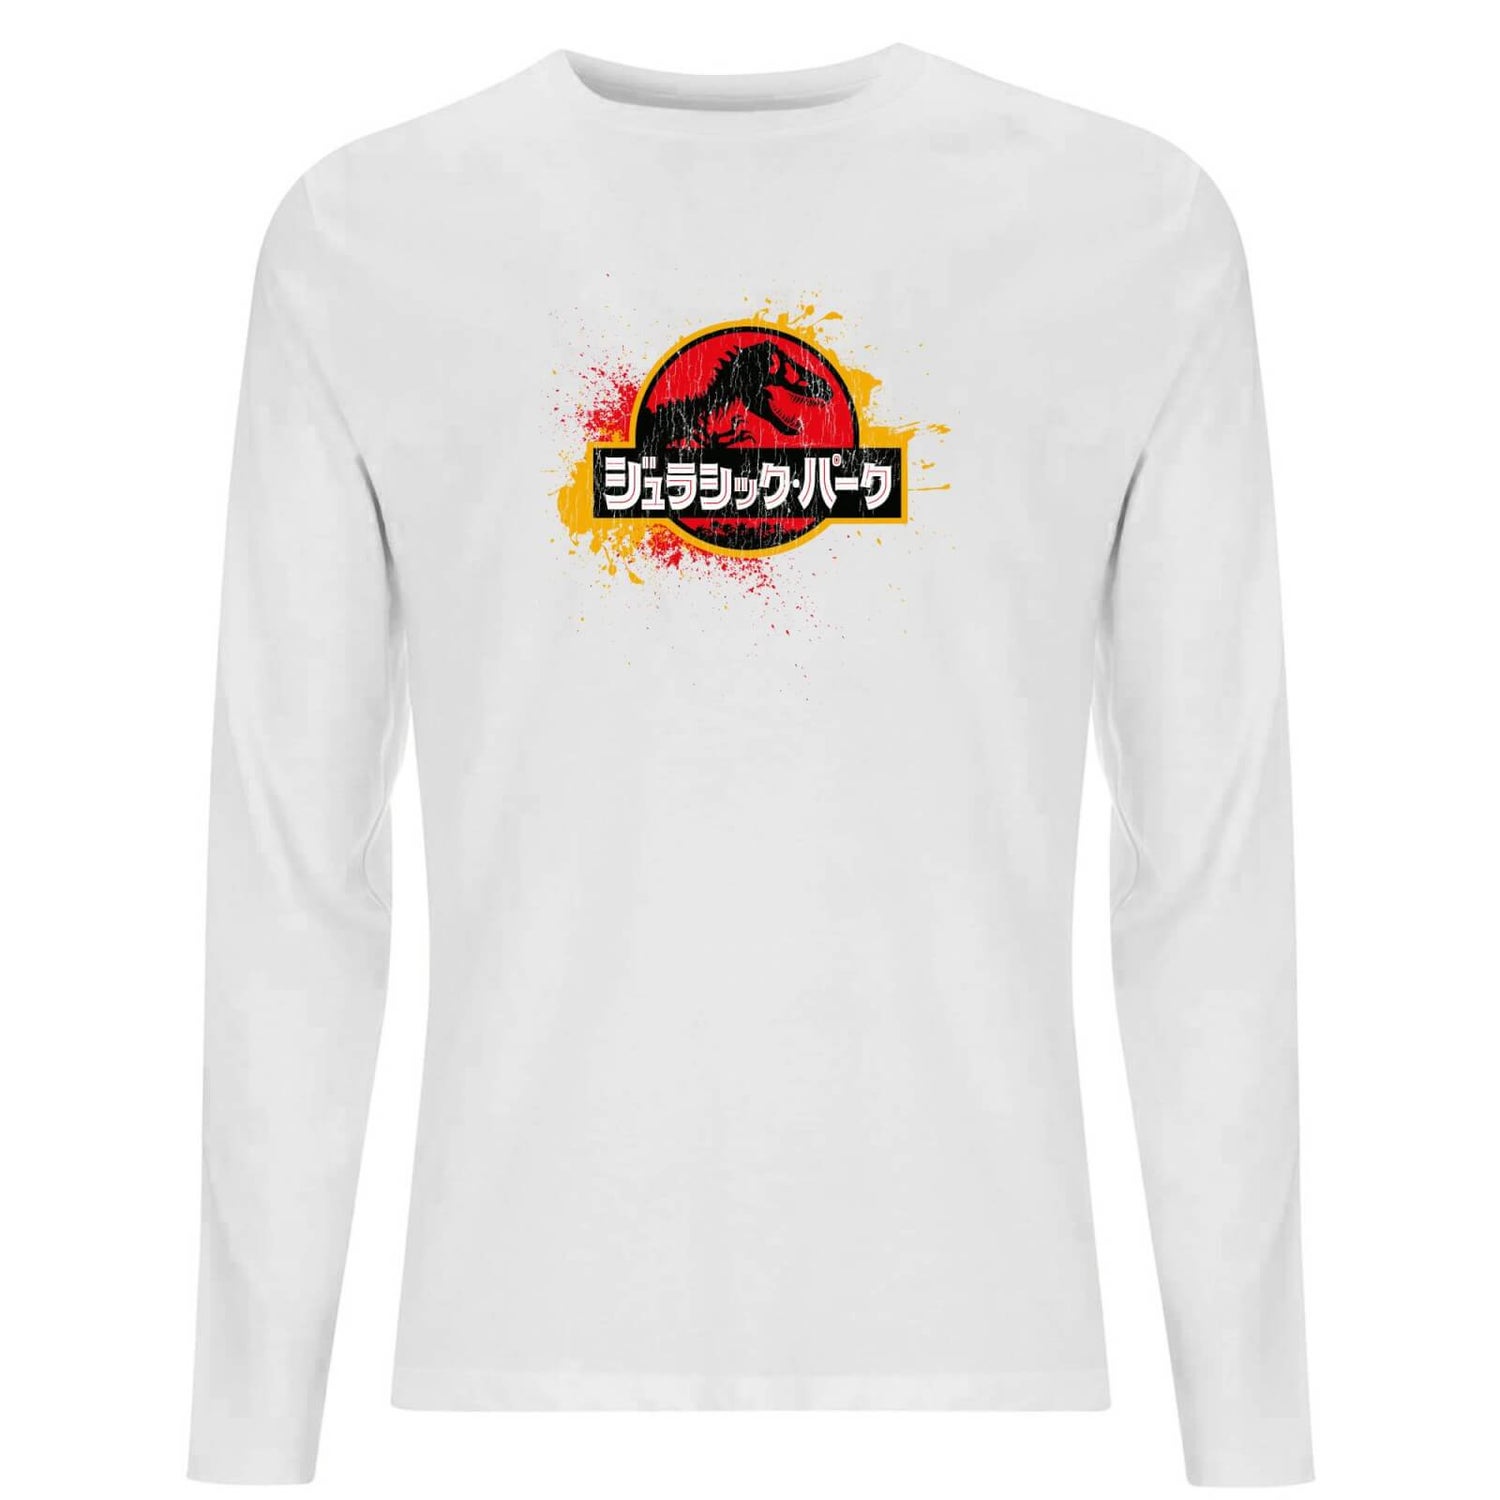 Jurassic Park Men's Long Sleeve T-Shirt - White